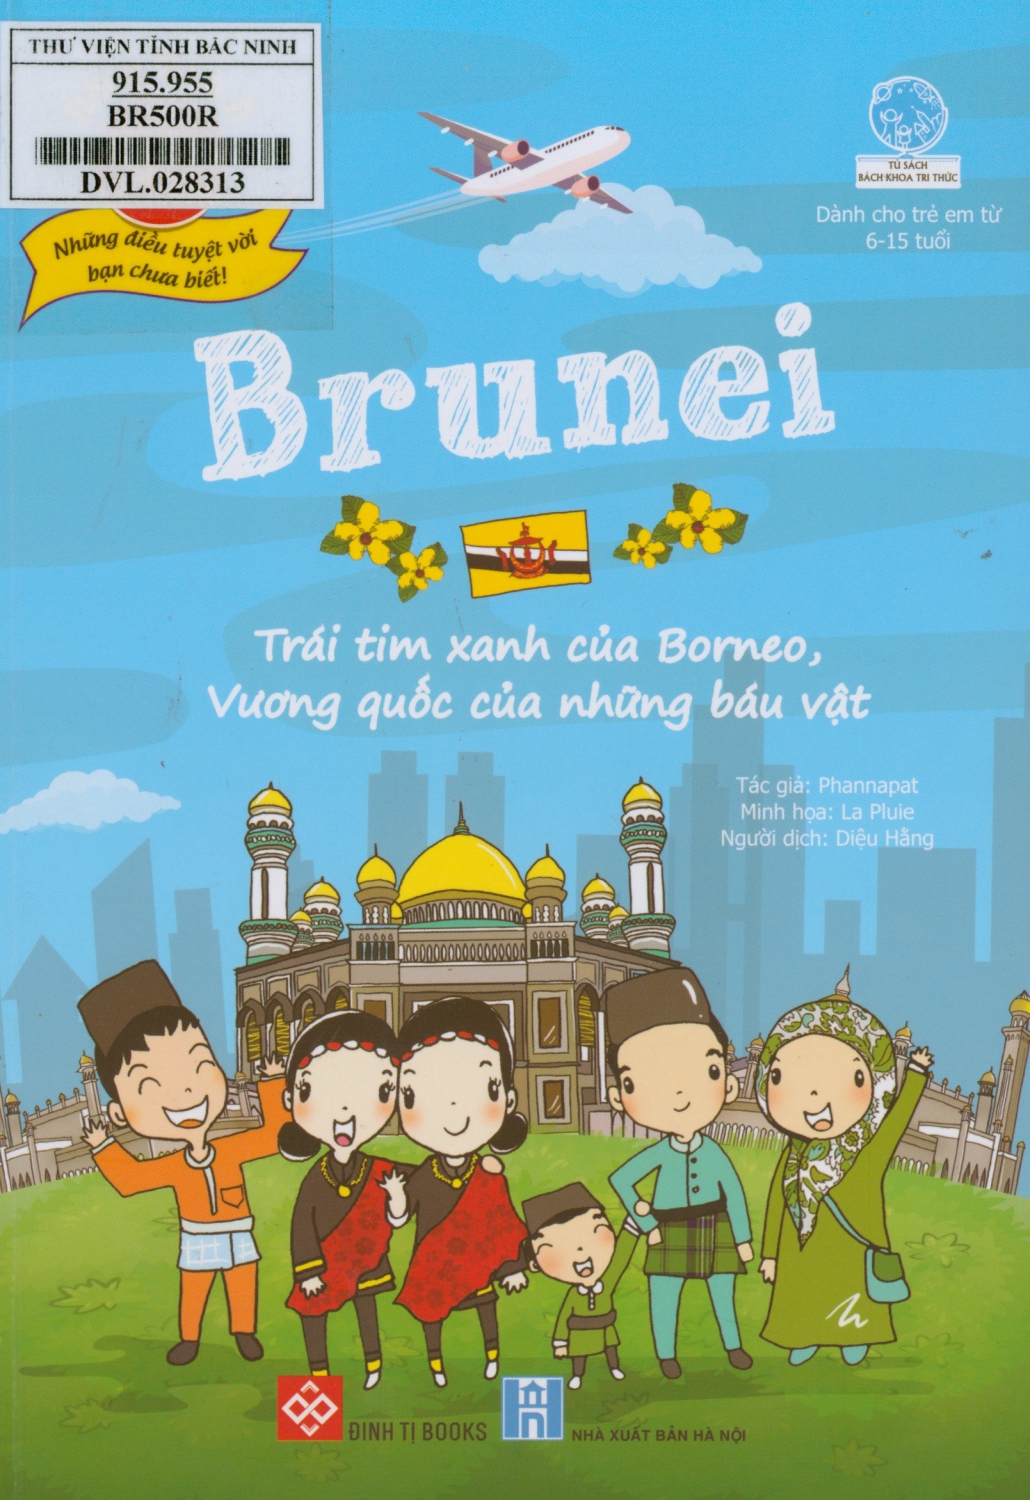 Brunei - Trái tim xanh của Borneo, Vương quốc của những báu vật